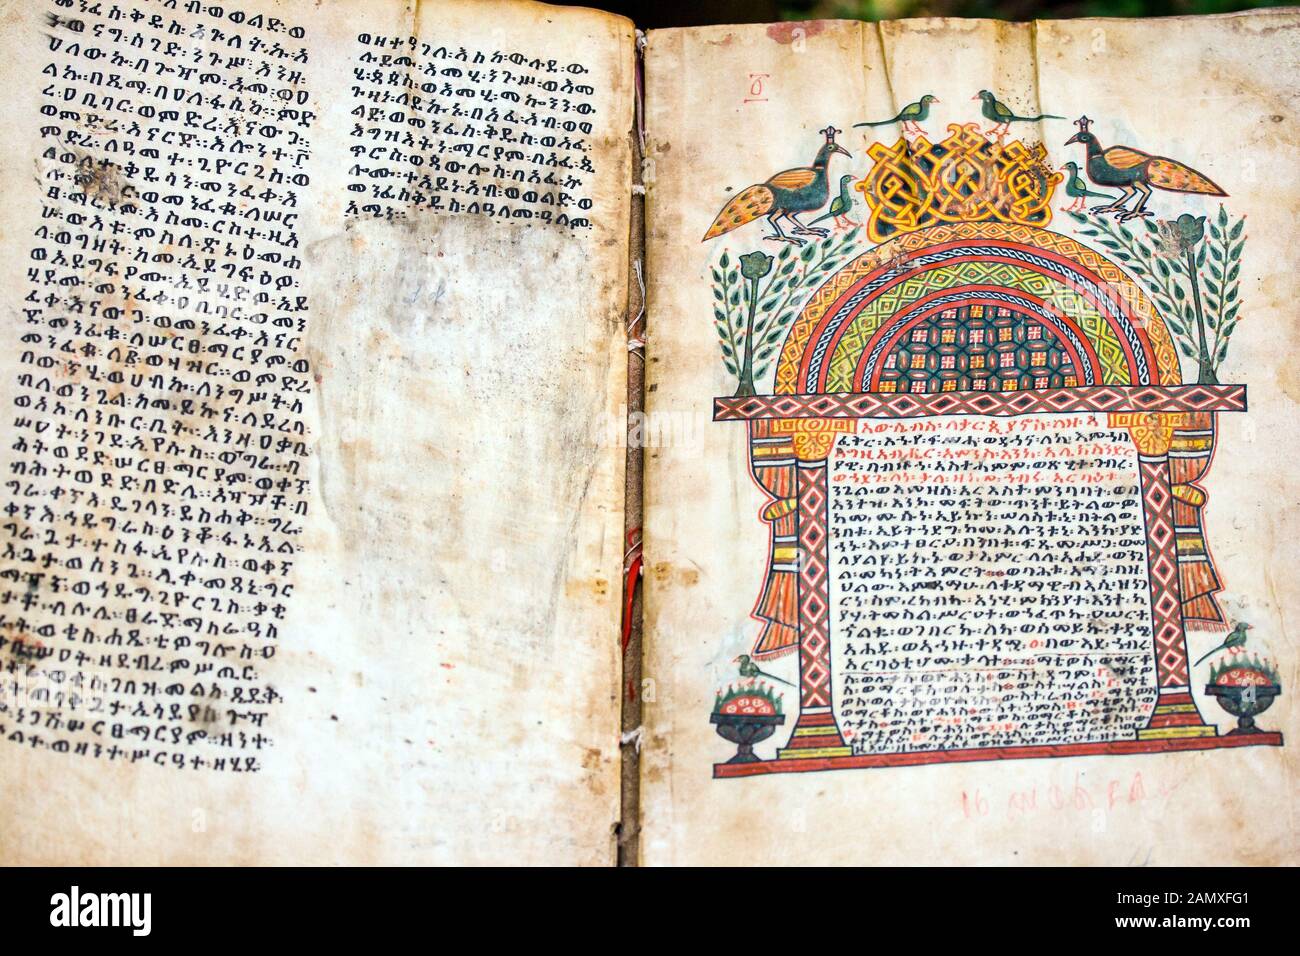 Zu den schätzen des Klosters gehört eine uralte illuminierte Handschrift. Kebran Gabriel Kloster, Kebran Gabriel Island, Lake Tana. Äthiopien. Stockfoto